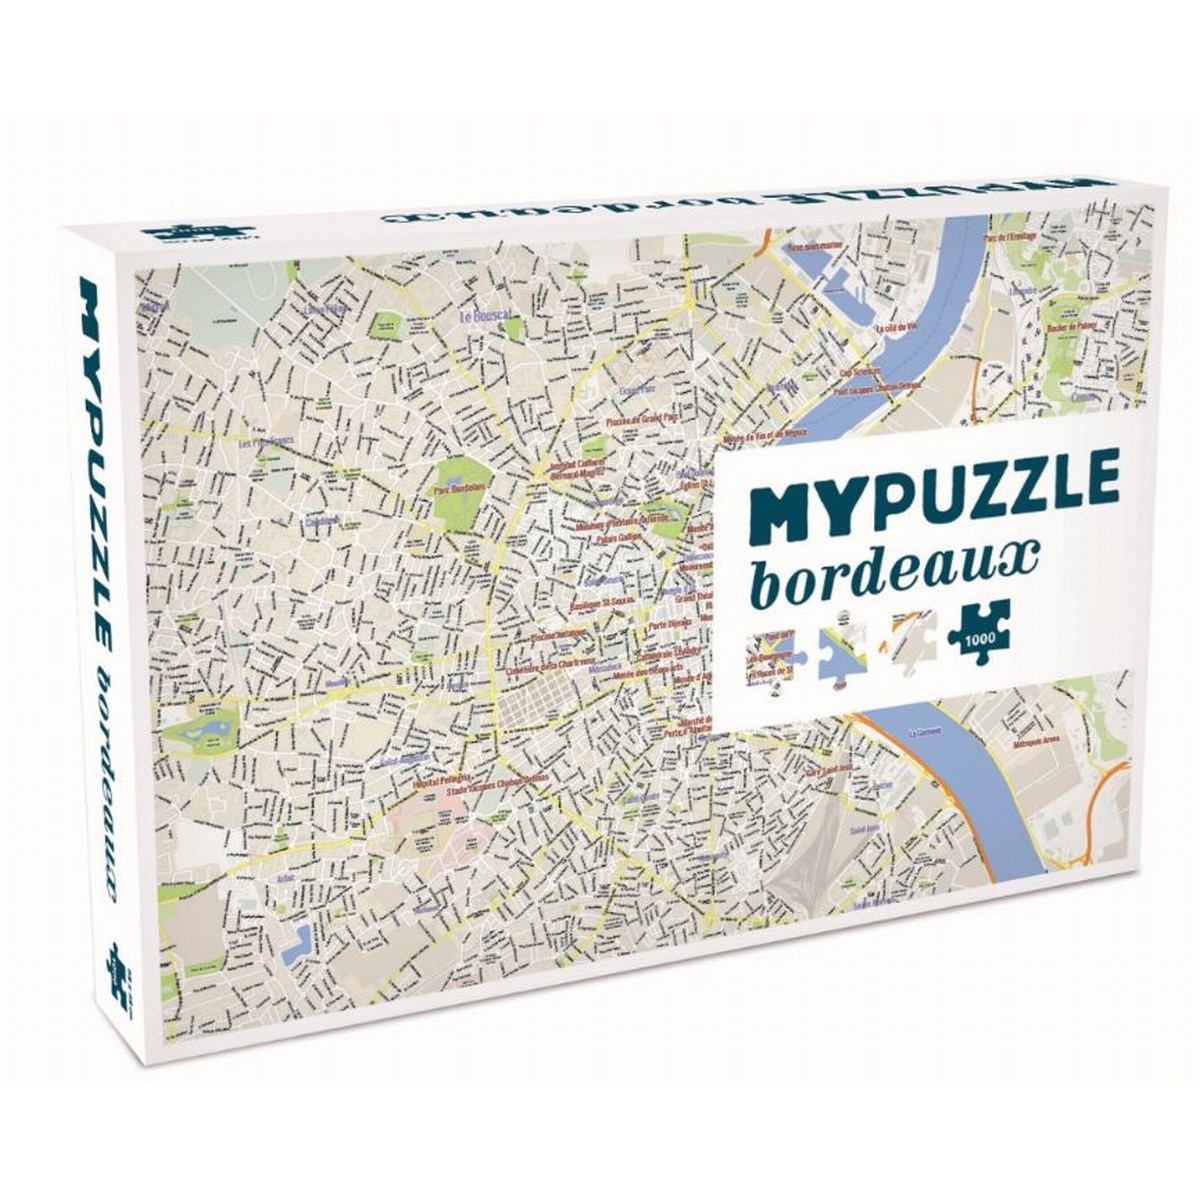 Puzzle mypuzzle bordeaux